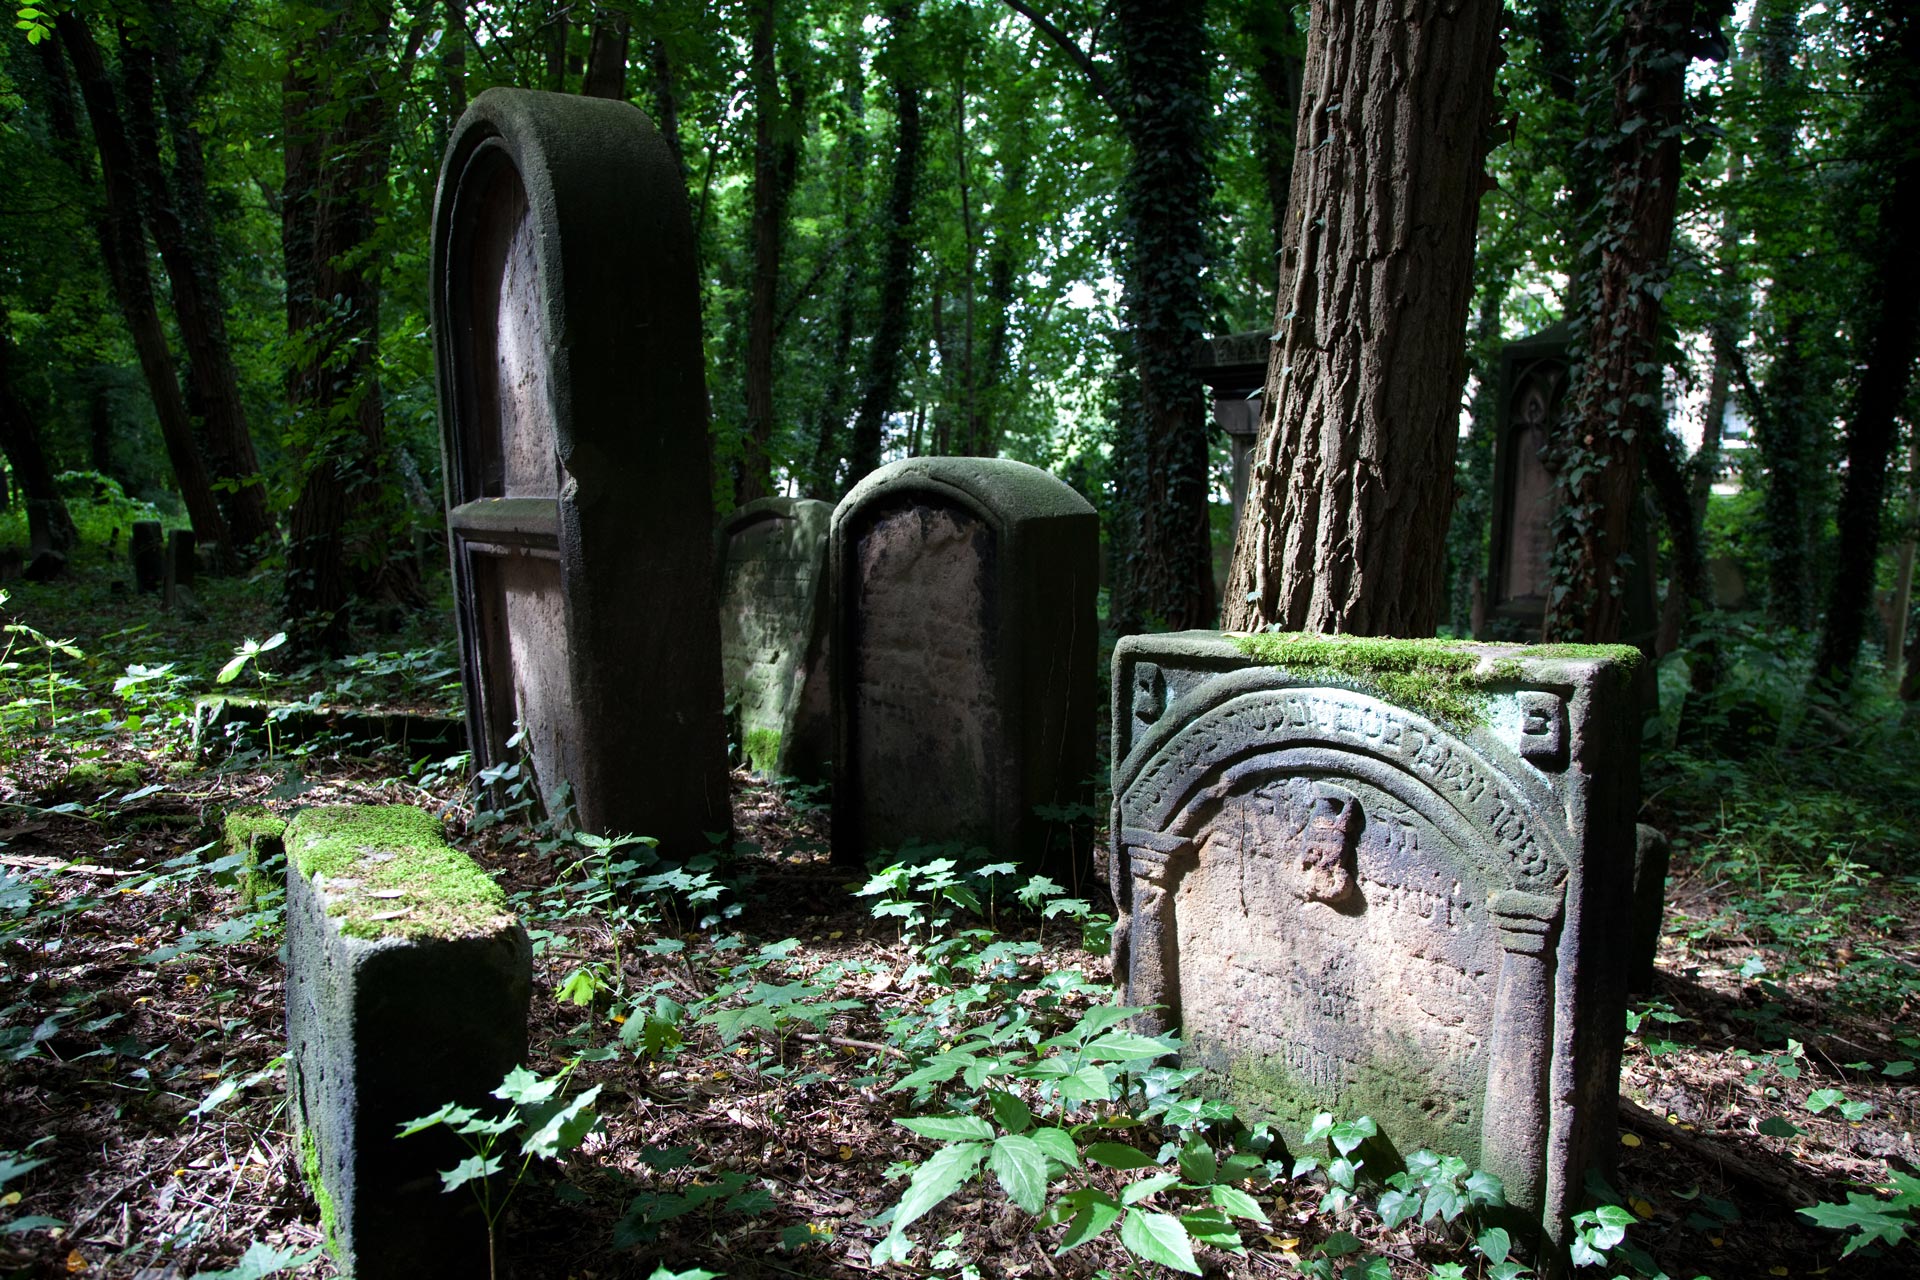 Alter jüdischer Friedhof